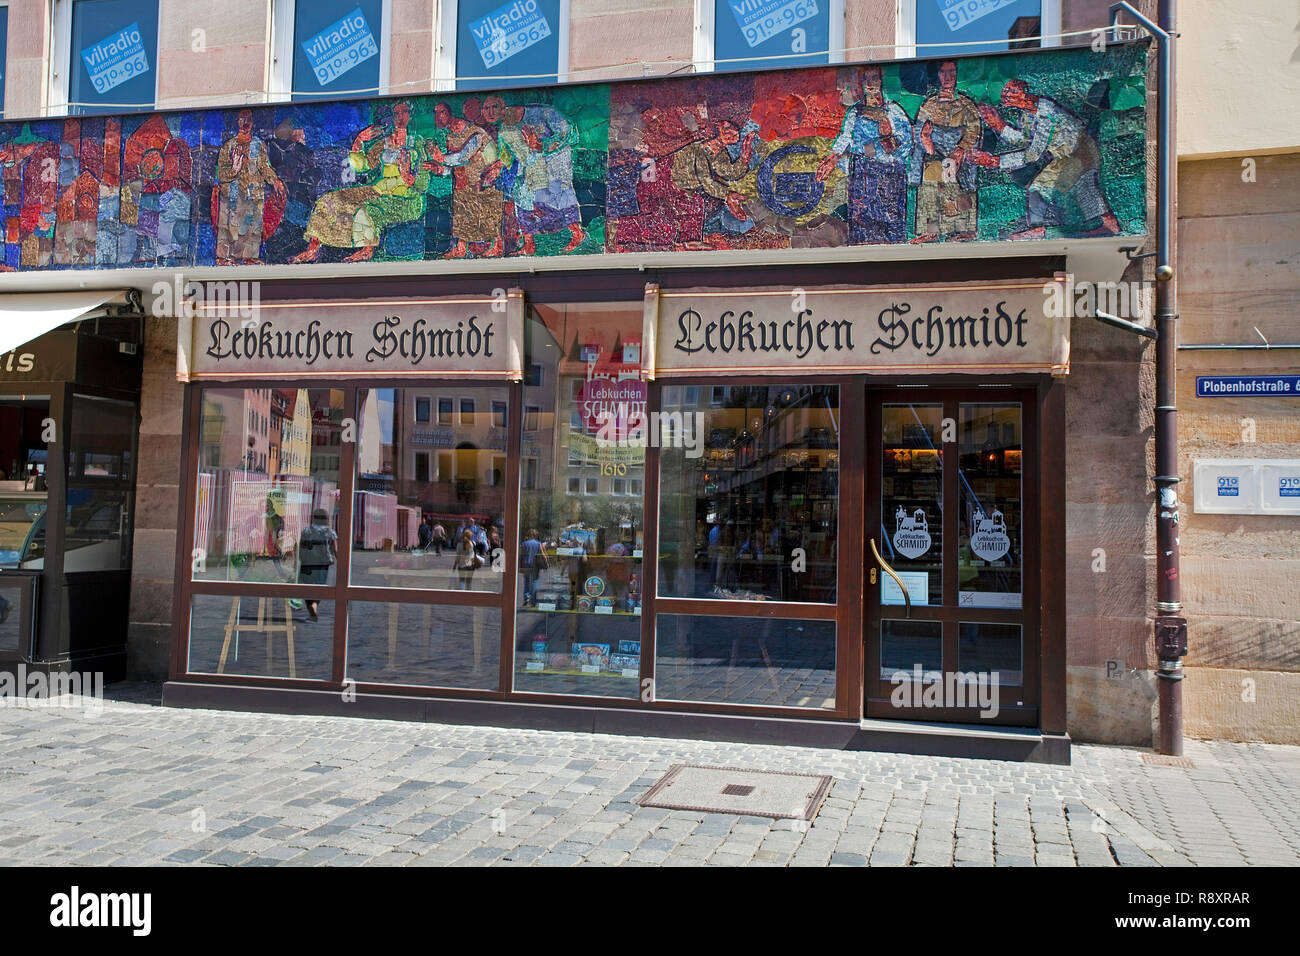 Lebkuchen Schmidt am Hauptmarkt in der Altstadt, Núremberg, Mittelfranken, Franken, Bayern, Deutschland | Lebkuchen Schmidt, una famosa tienda de pan de jengibre Foto de stock